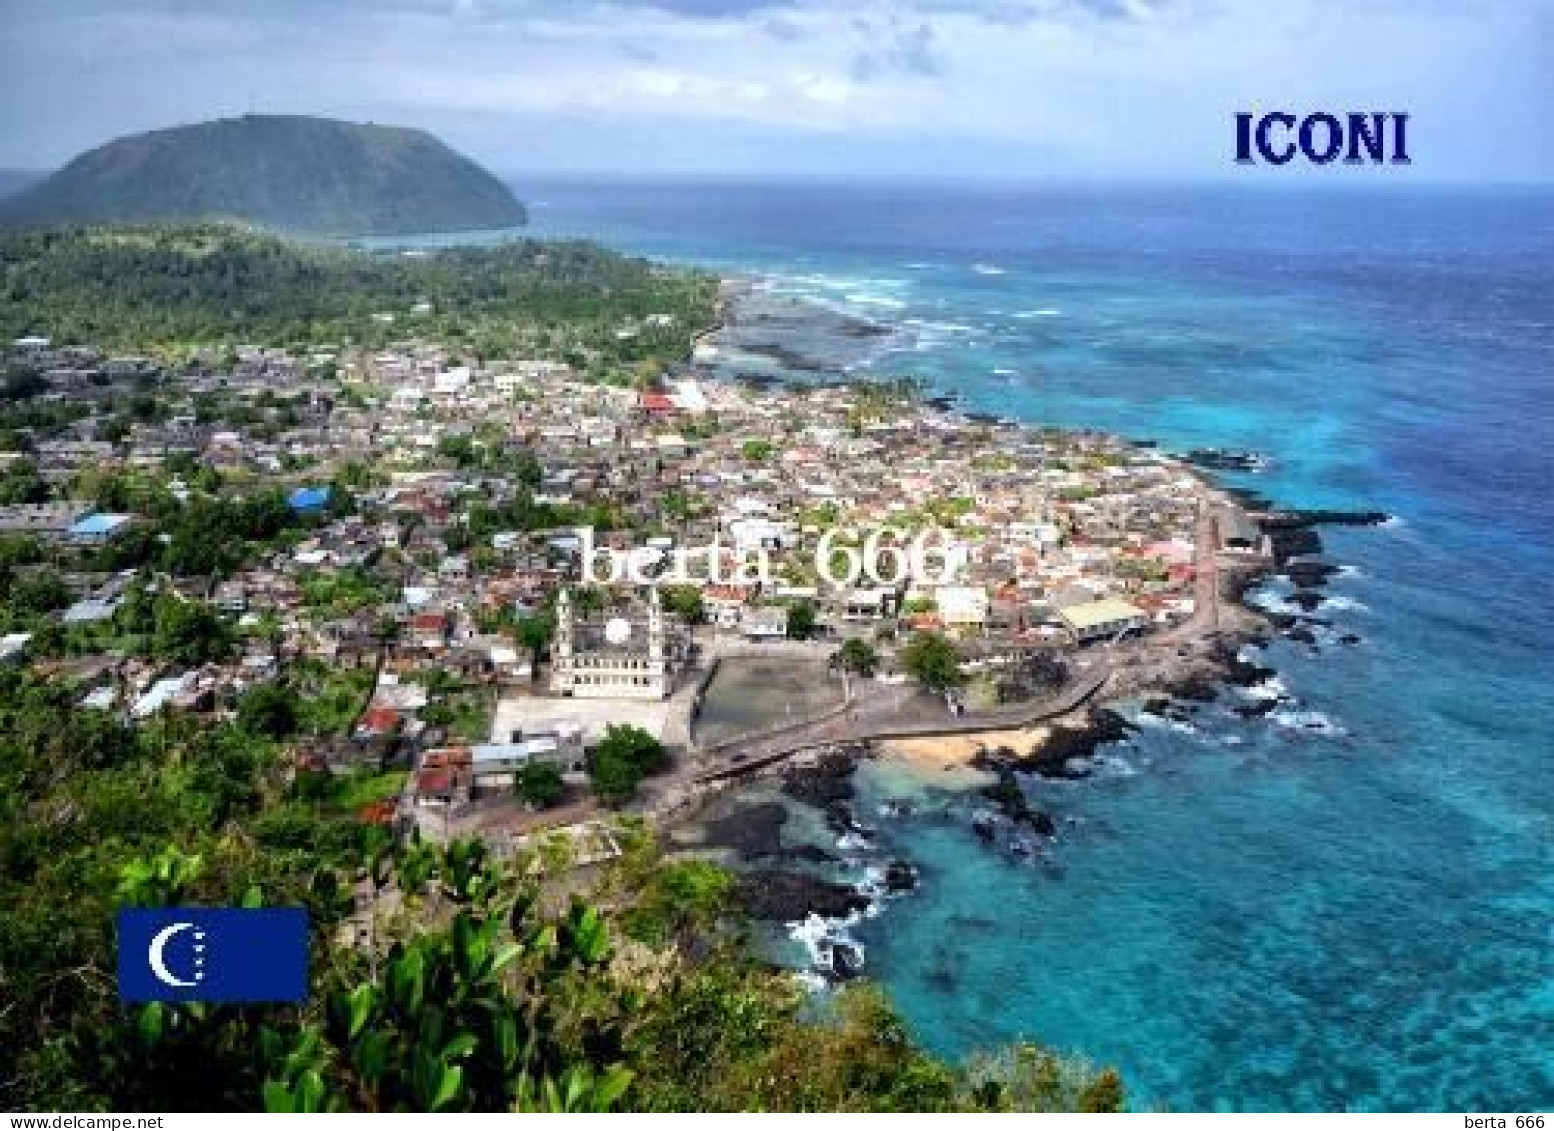 Comoros Grande Comore Iconi Aerial View Comores New Postcard - Comores